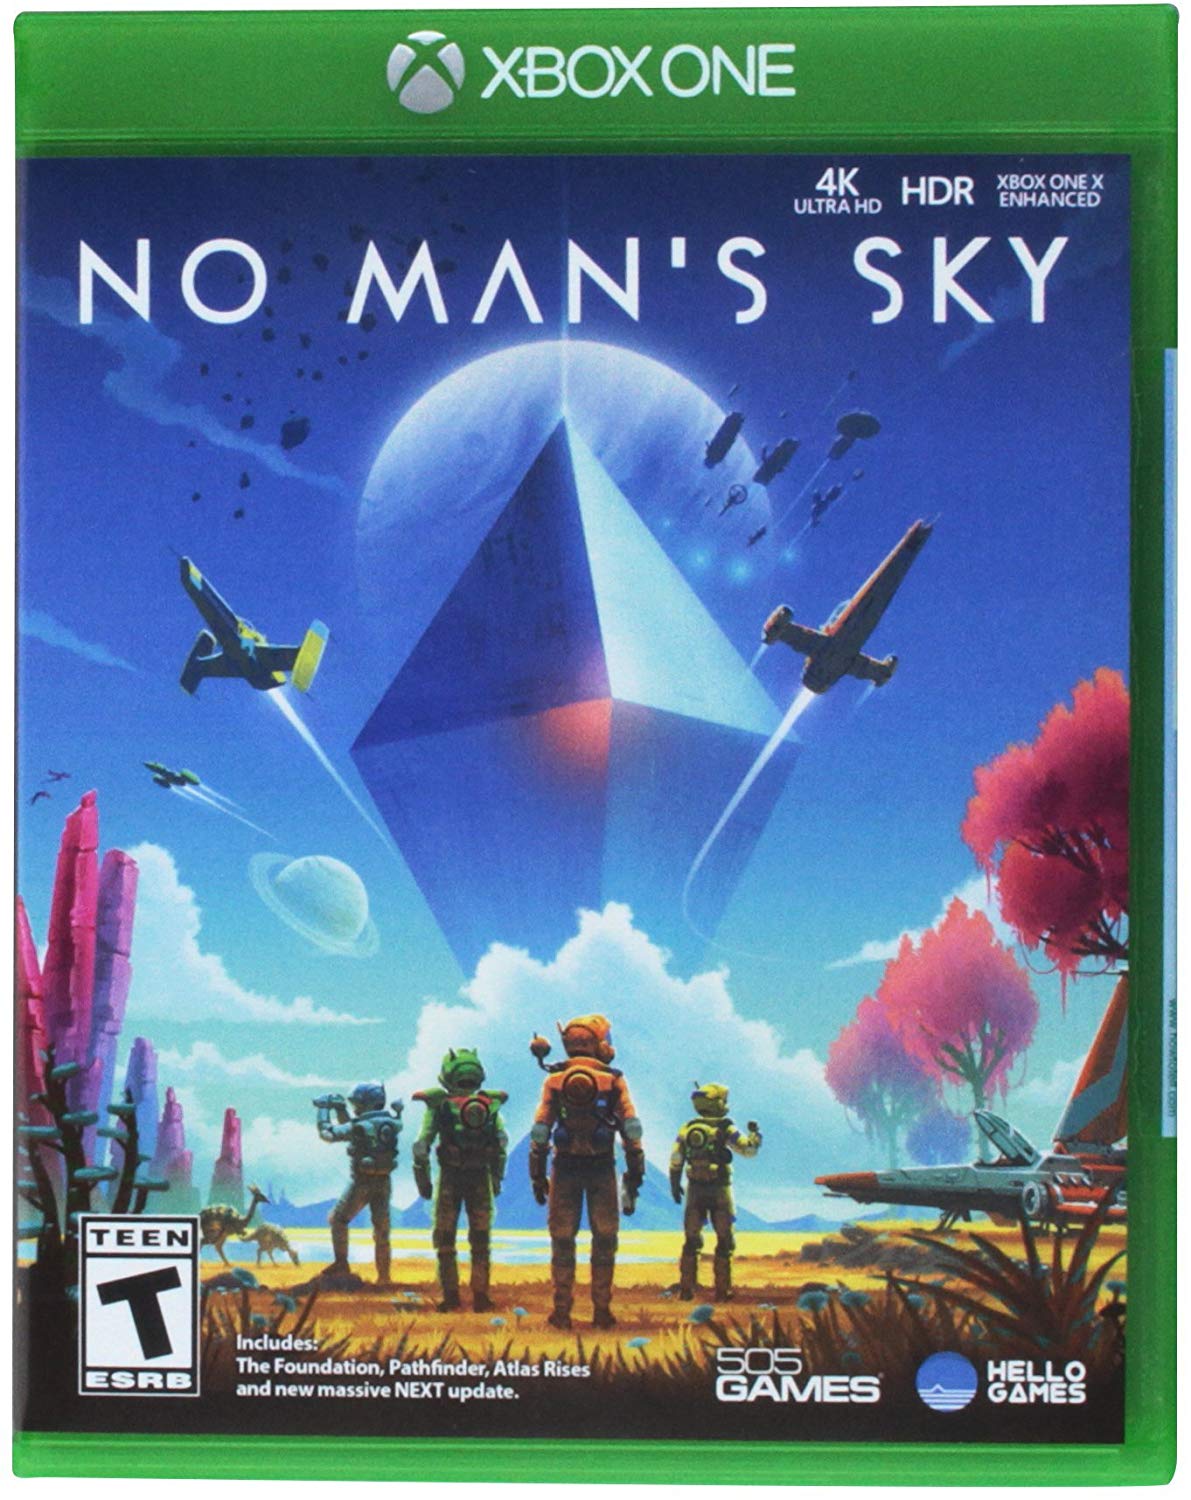 No Man's Sky Xbox One cover art